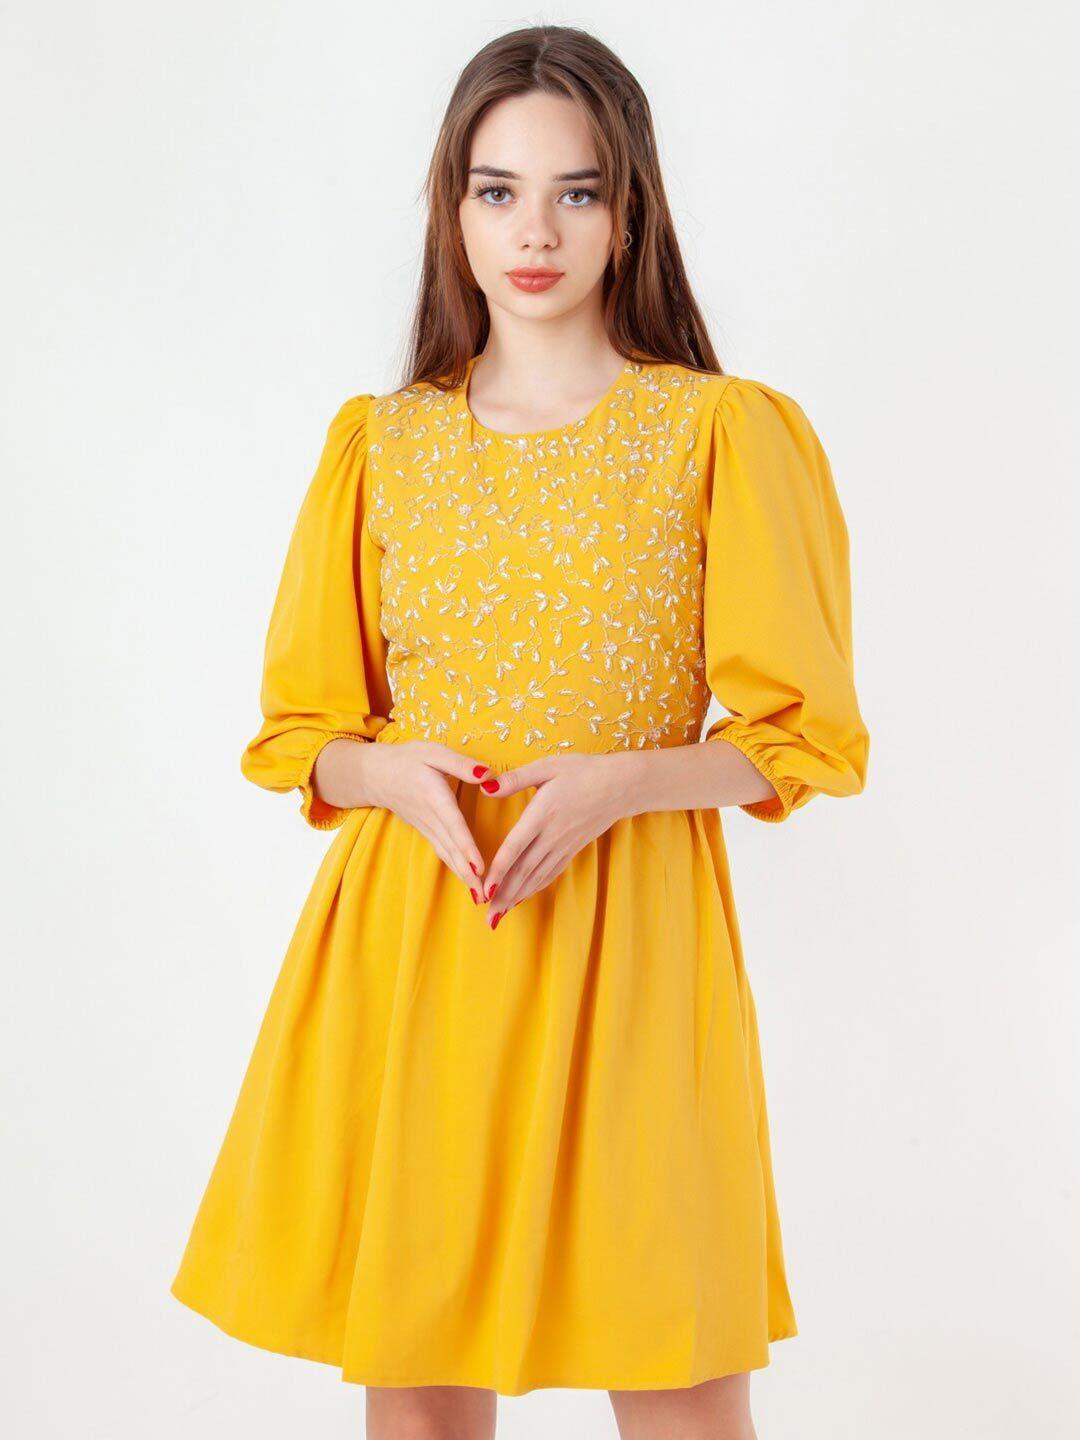 zink london yellow dress